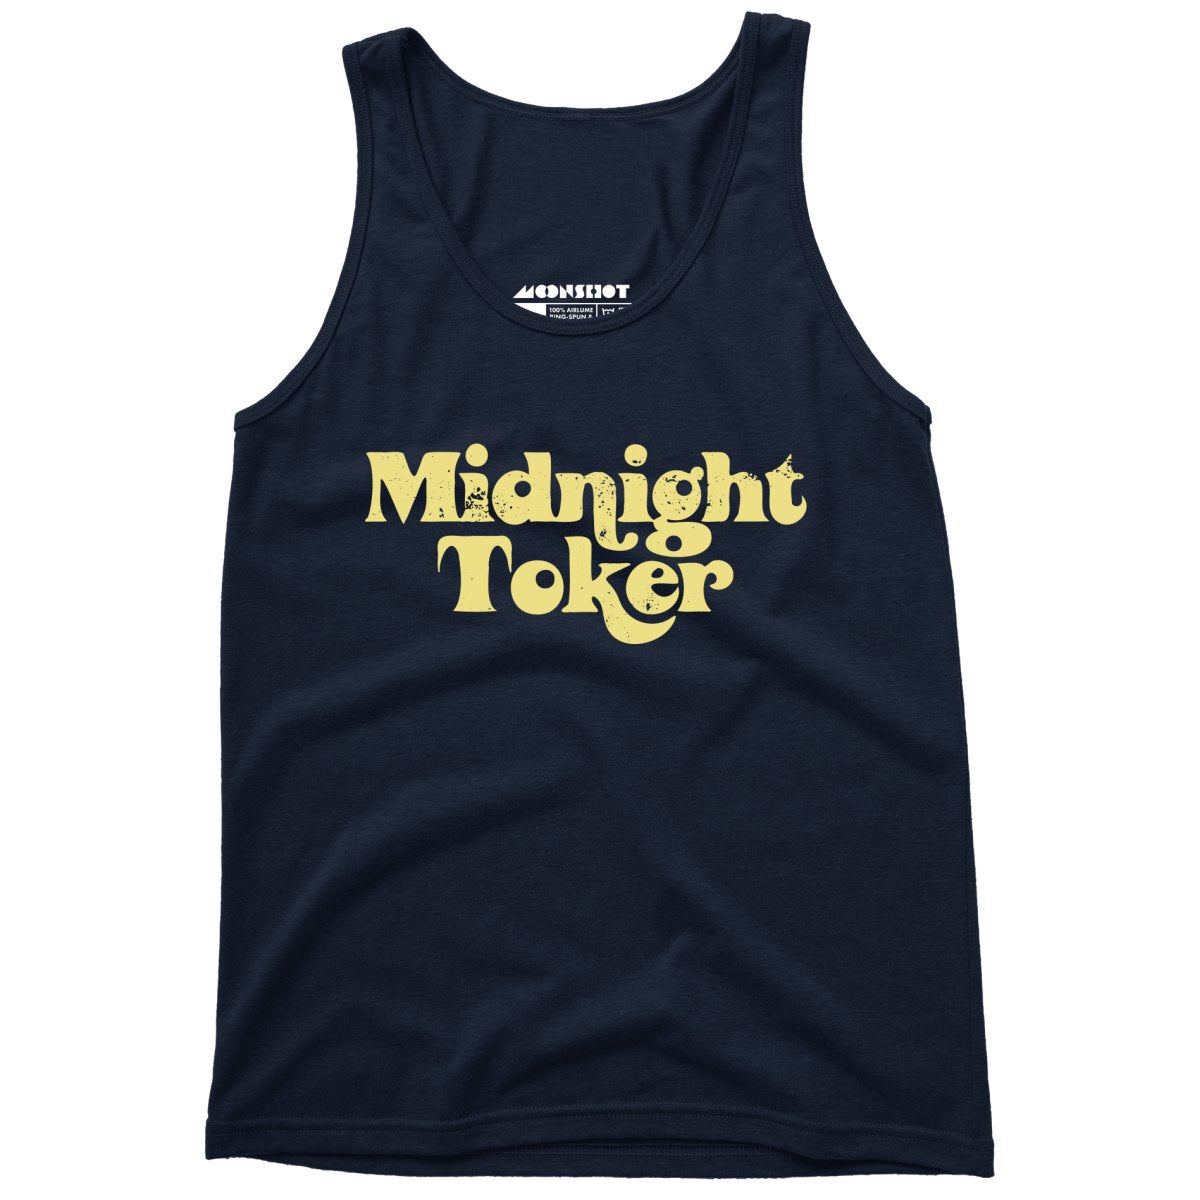 Midnight Toker - Unisex Tank Top